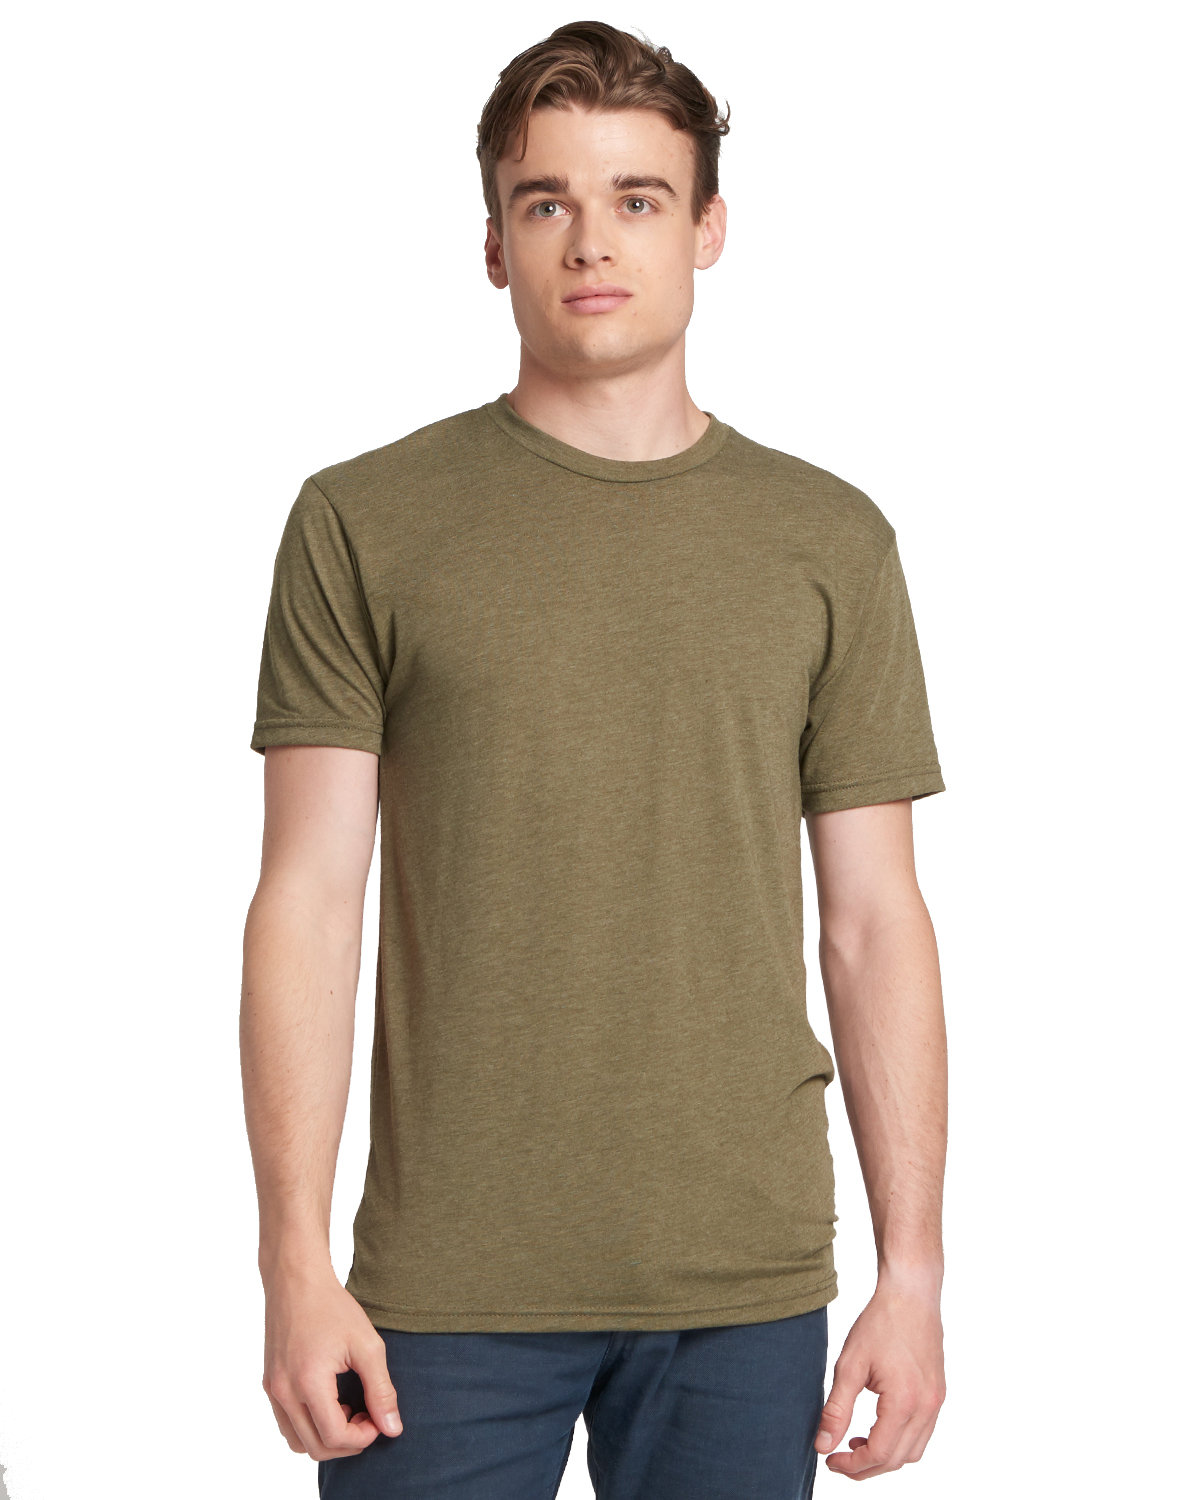 Next Level 6010 - Triblend T-Shirt